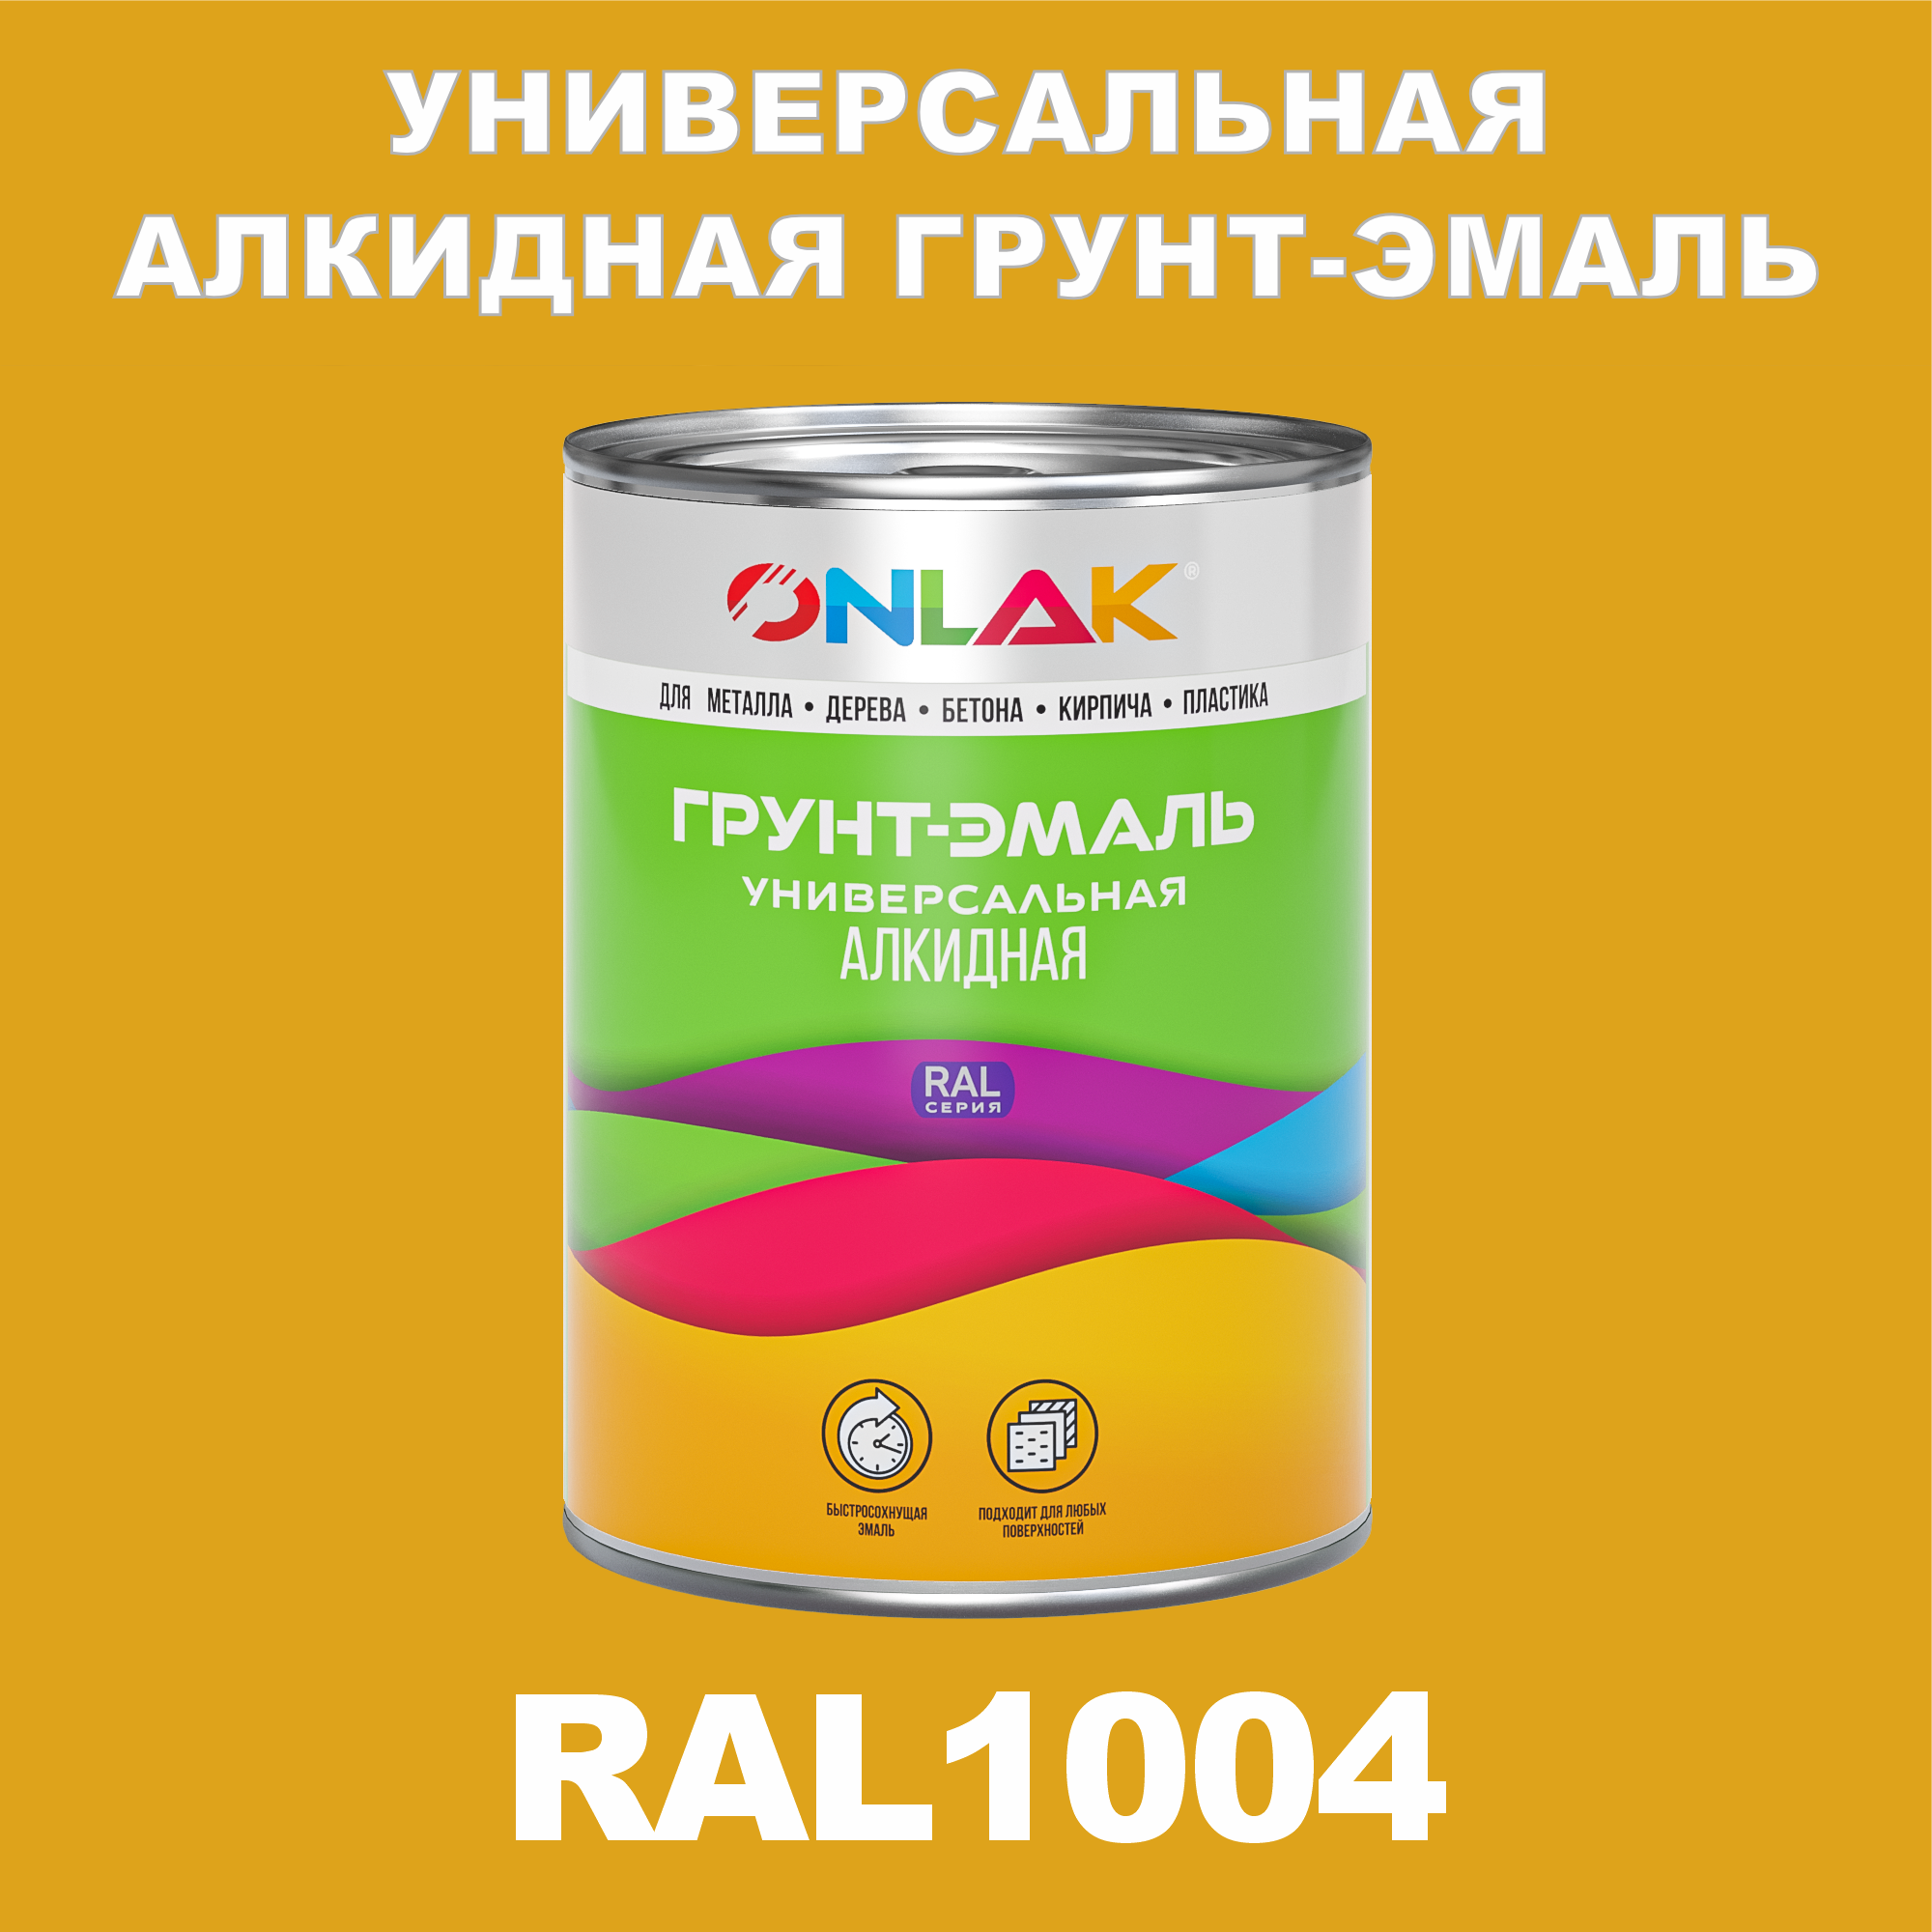 Грунт-эмаль ONLAK 1К RAL1004 антикоррозионная алкидная по металлу по ржавчине 1 кг грунт эмаль neomid по ржавчине быстросохнущая алкидная серая 0 9 кг